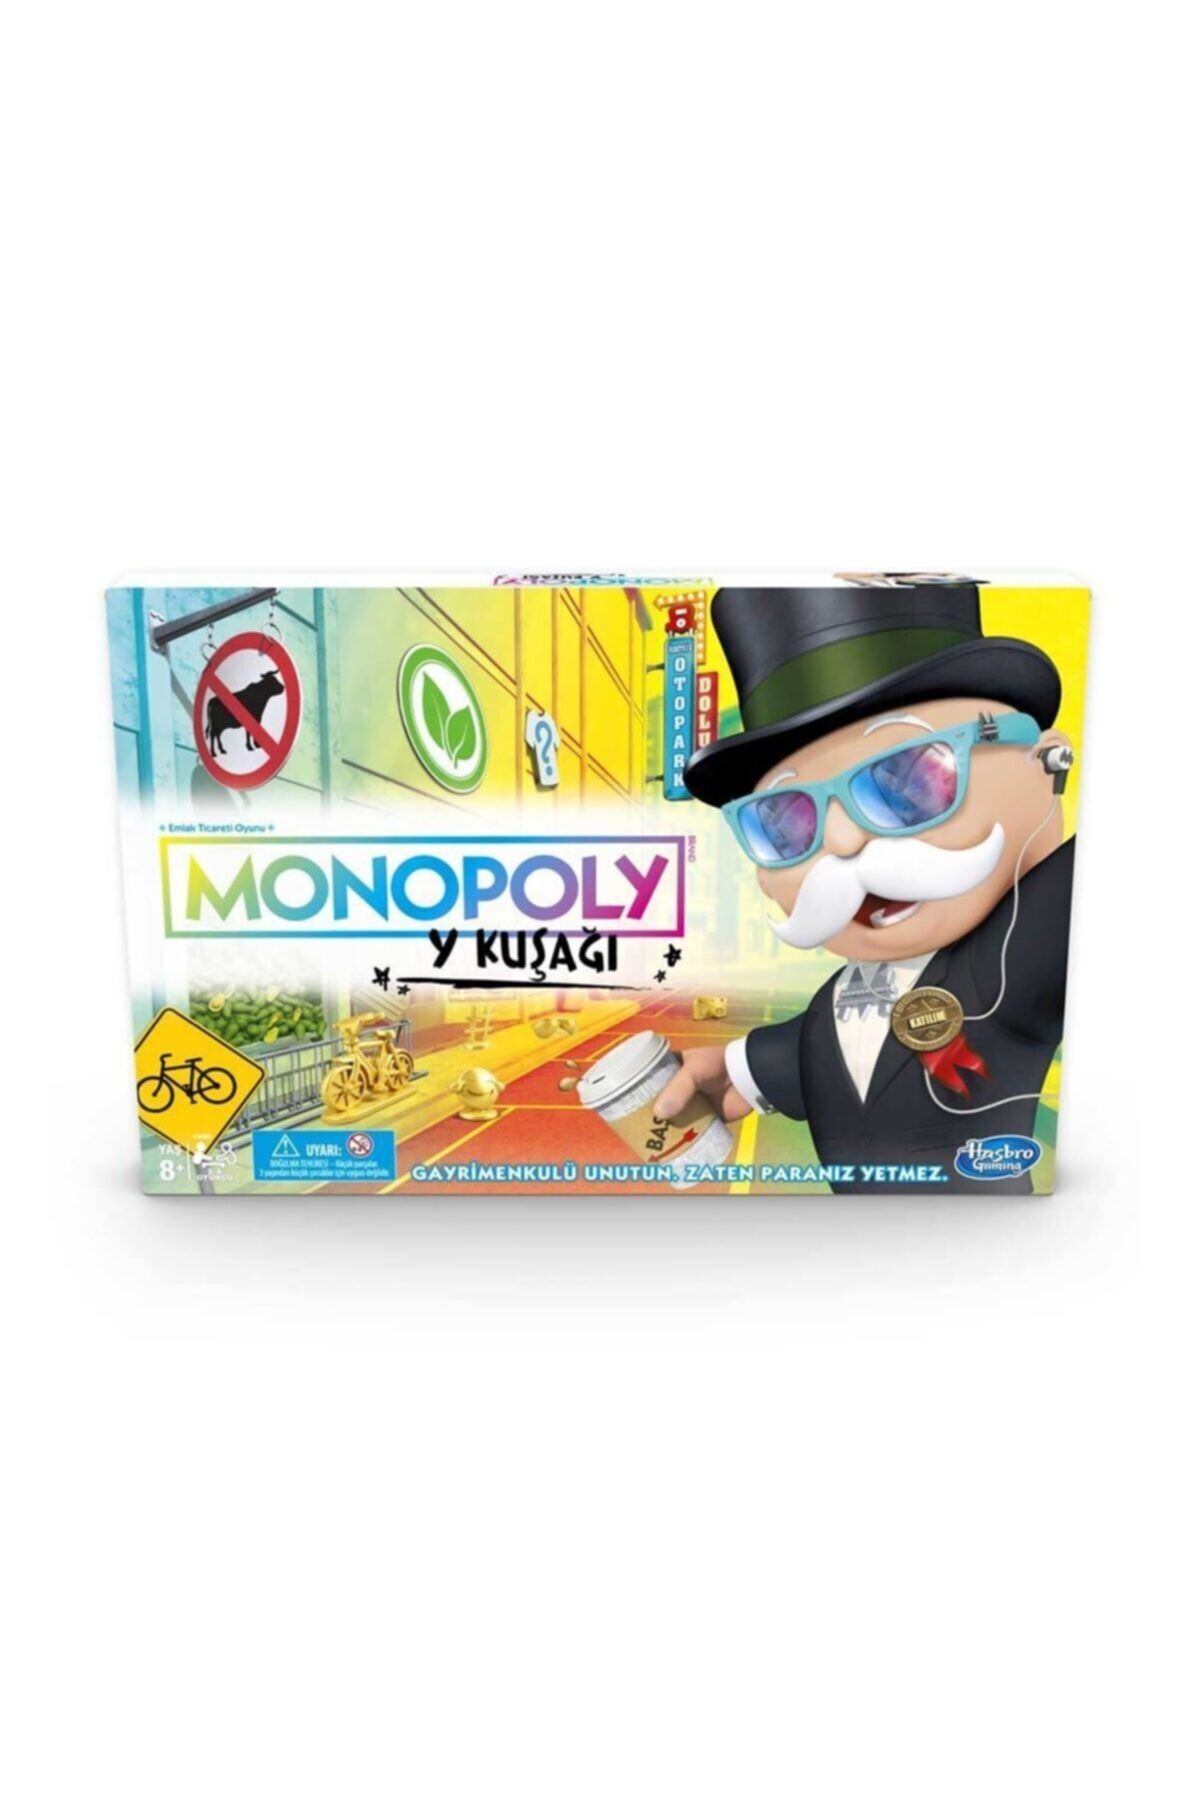 Monopoly Marka: Hasbro E4989 Monopoly Y Kuşağı /  Yaş Kategori: Bebek & Aktivite Oyuncakları